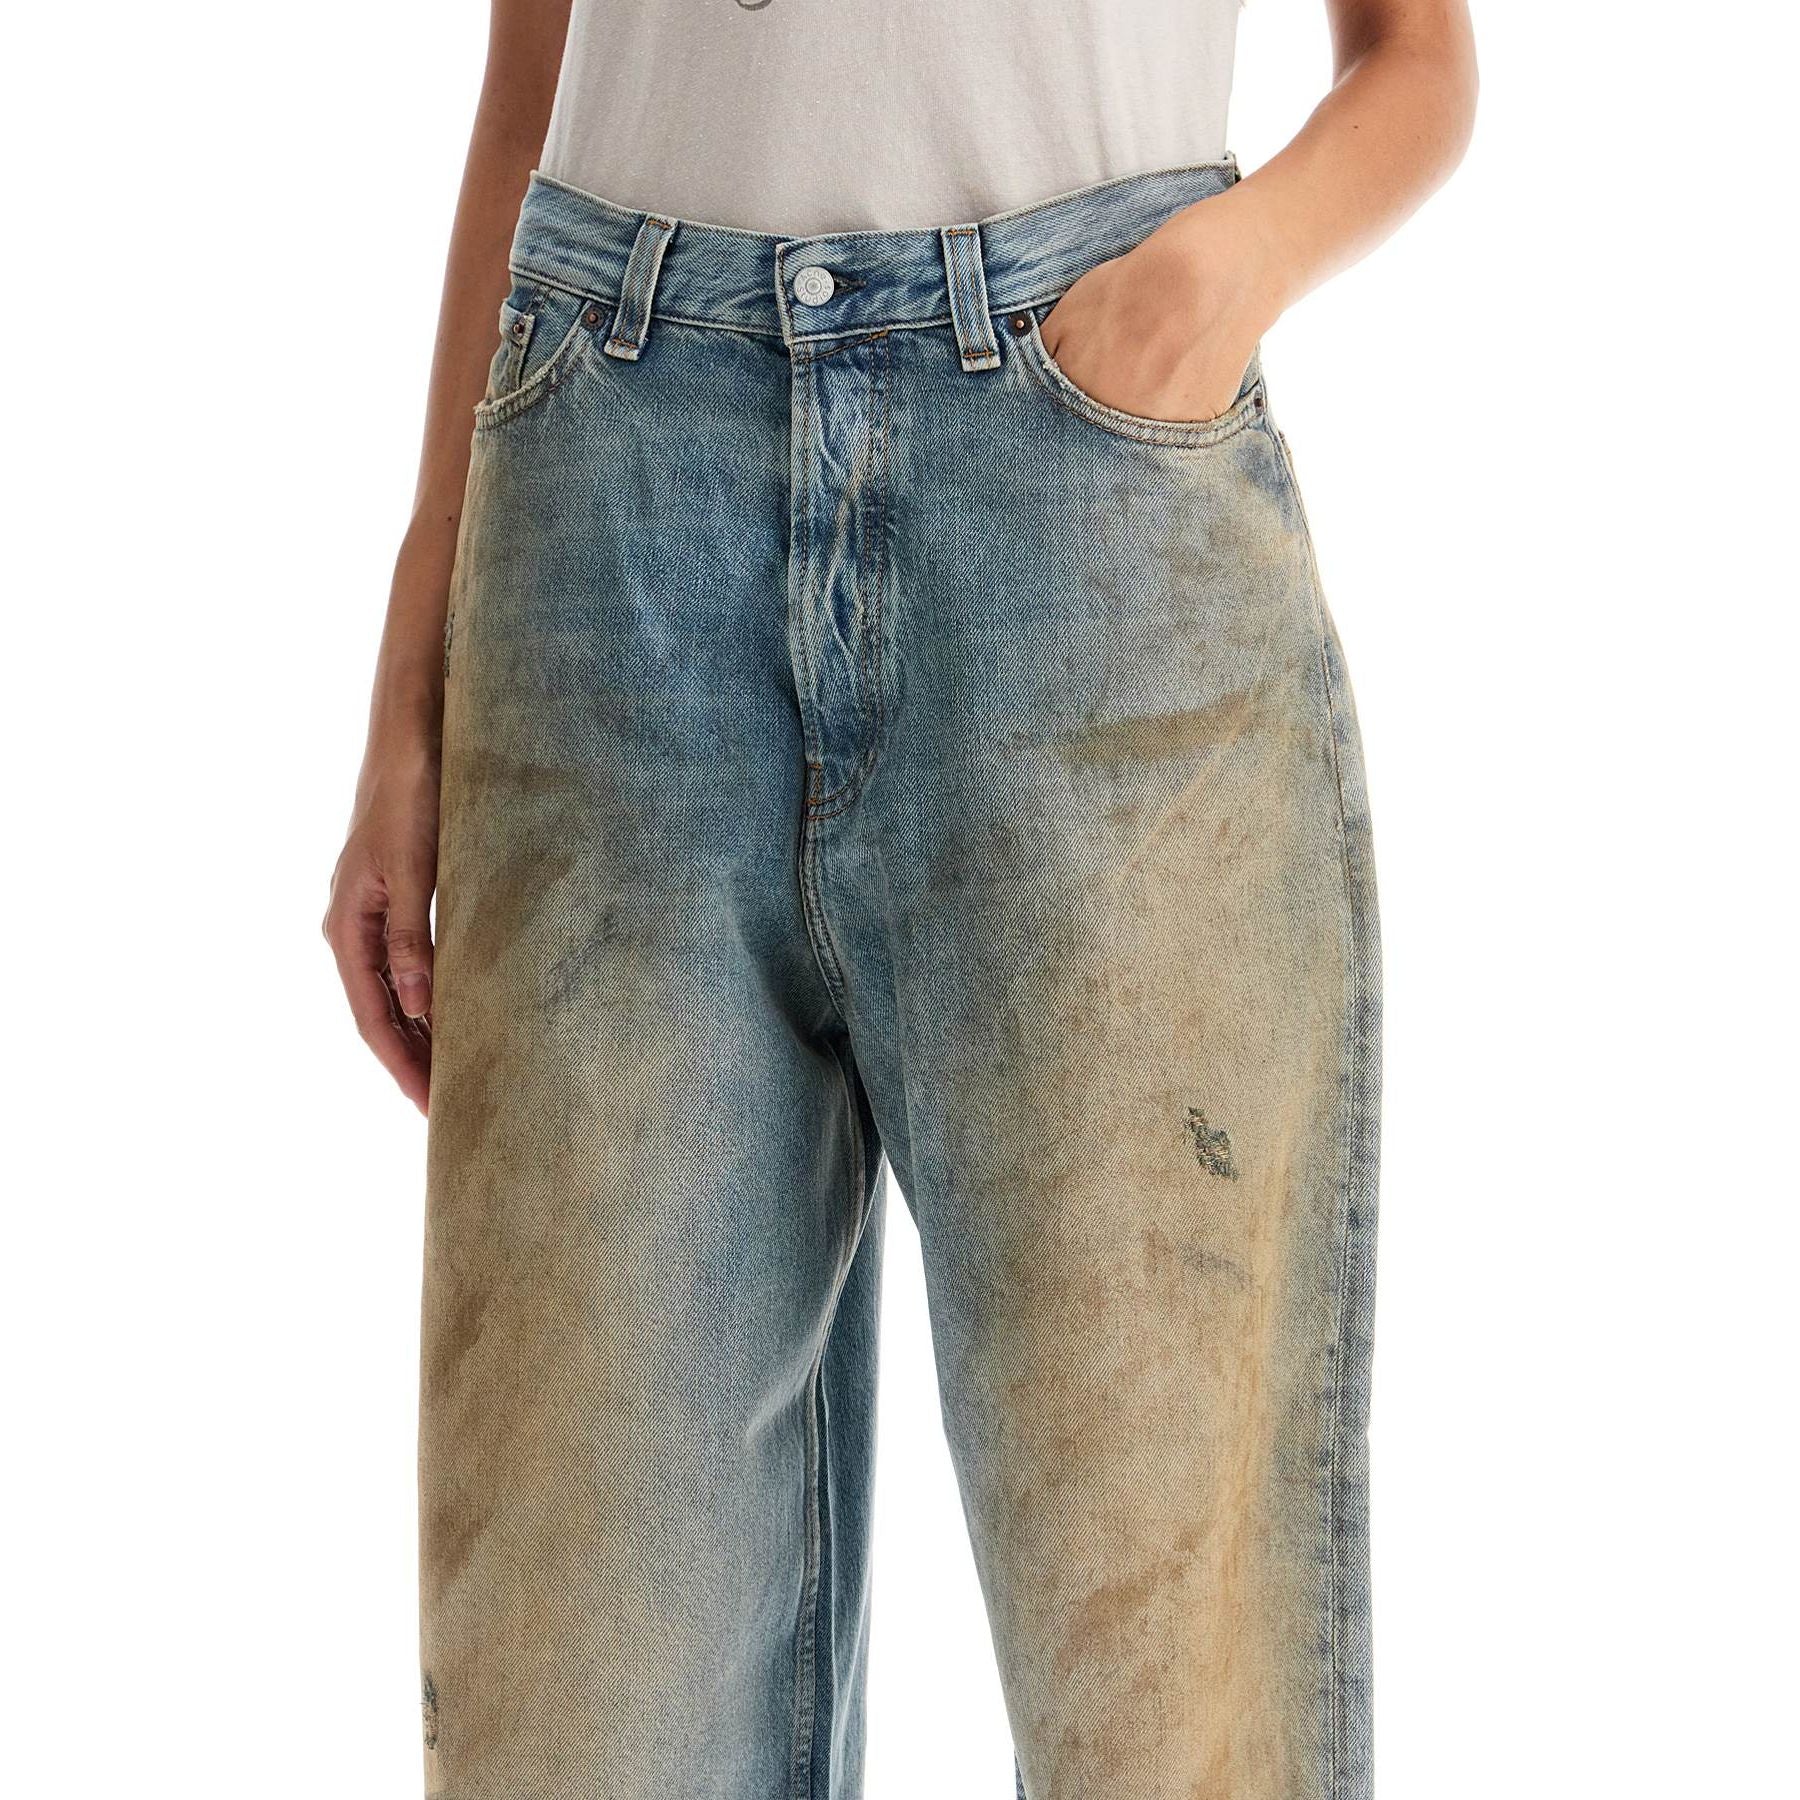 Super Baggy Organic Cotton Jeans